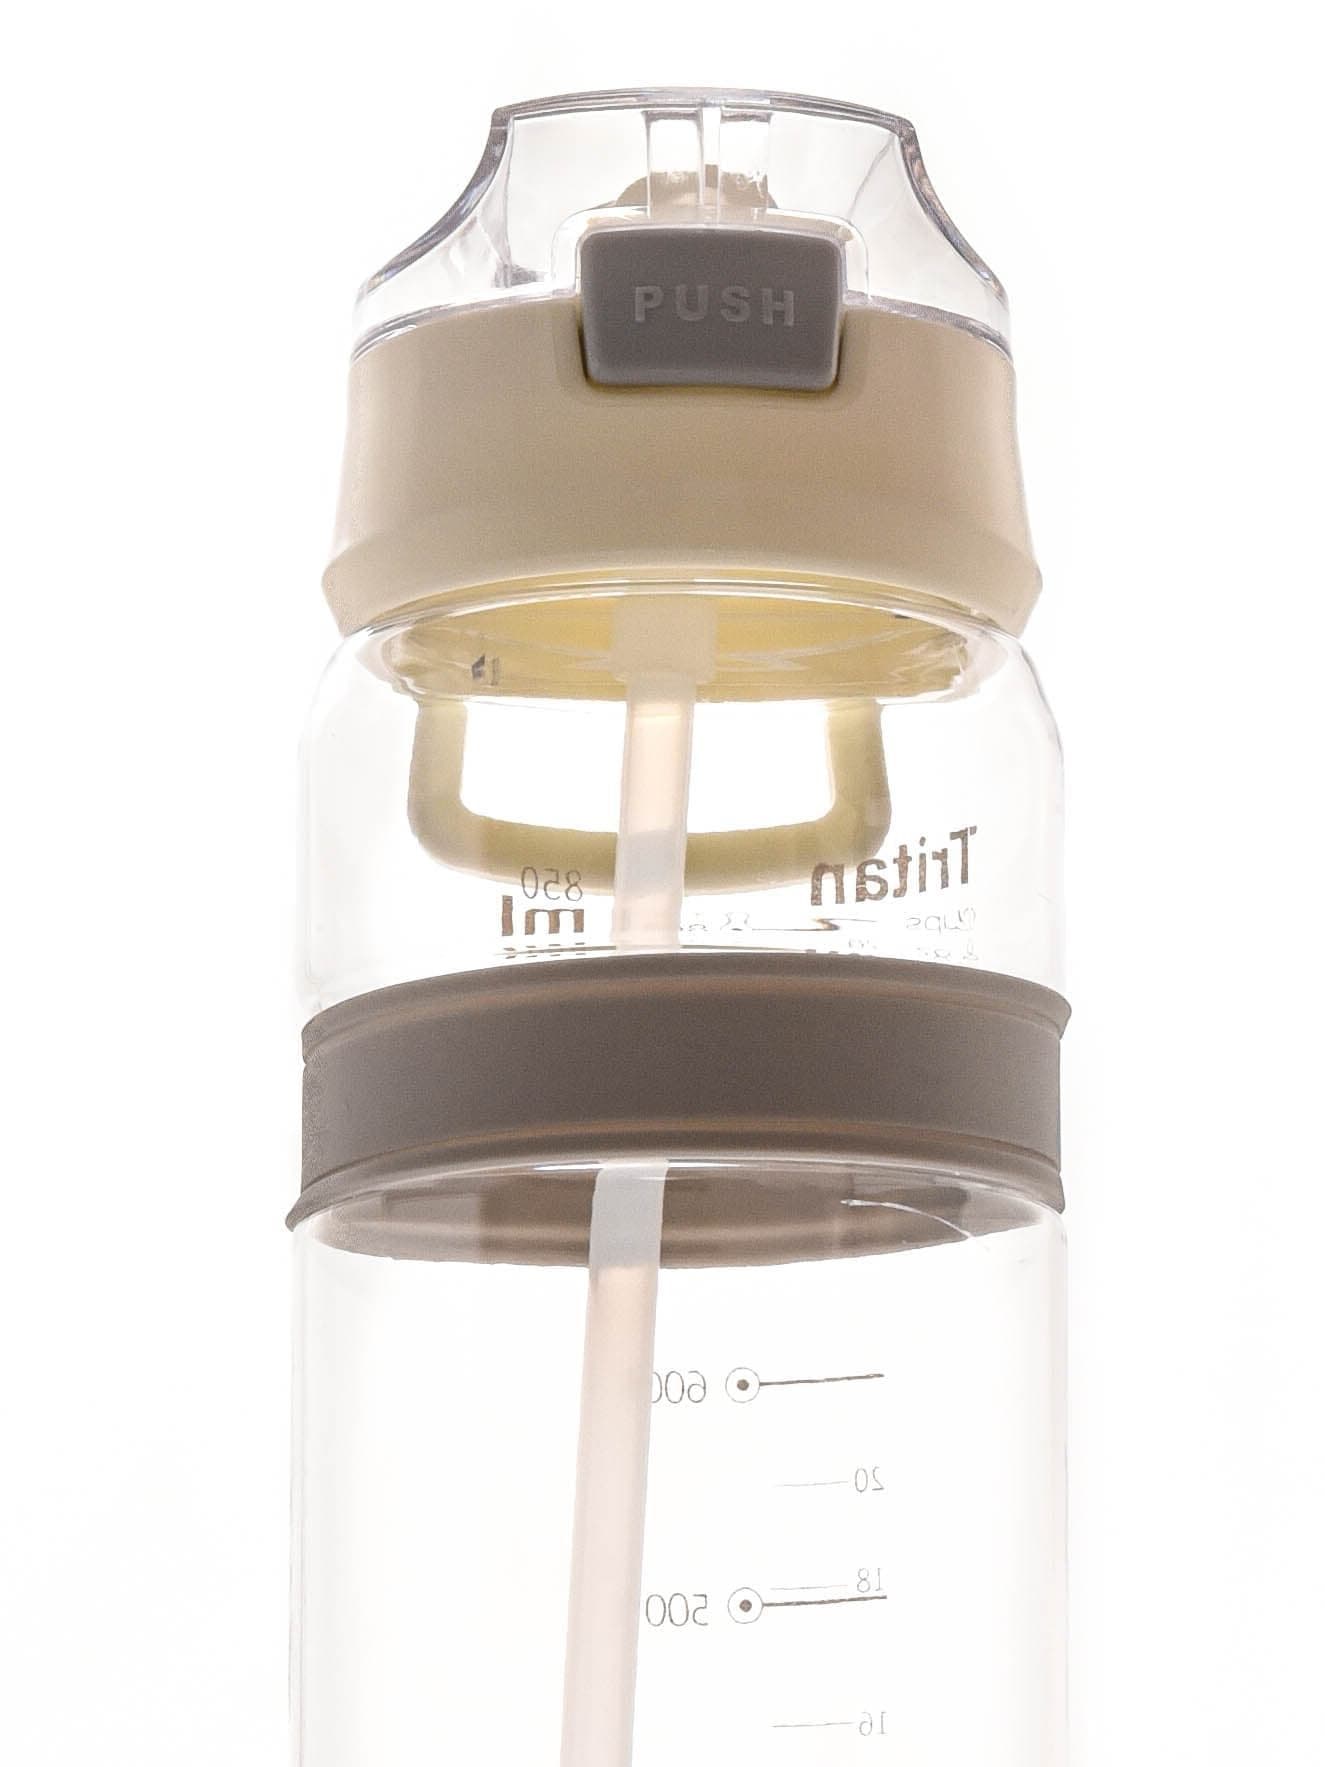 Бутылка для воды Diller D36 850 ml (Белый) фото